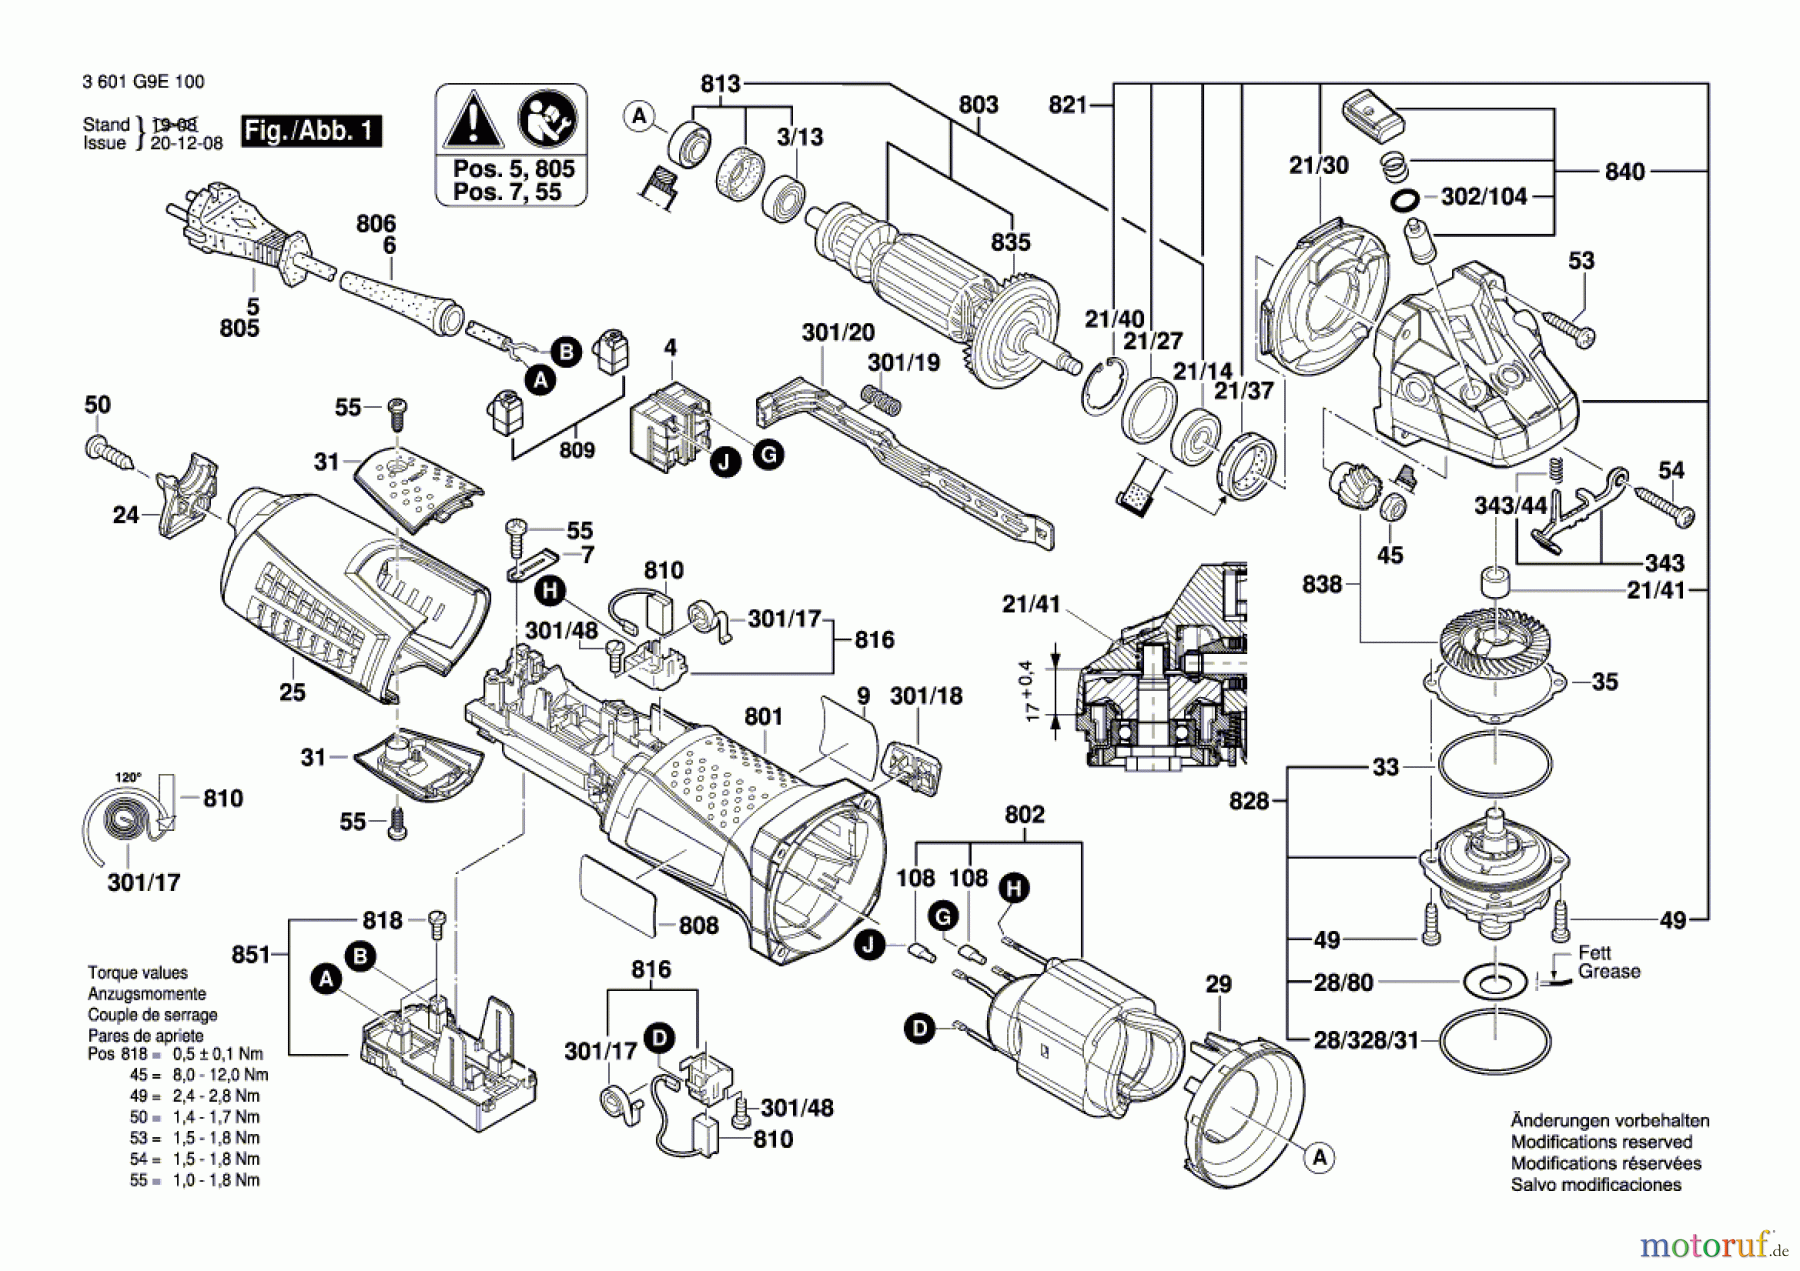  Bosch Werkzeug Winkelschleifer GWS 13-125 CIX Seite 1